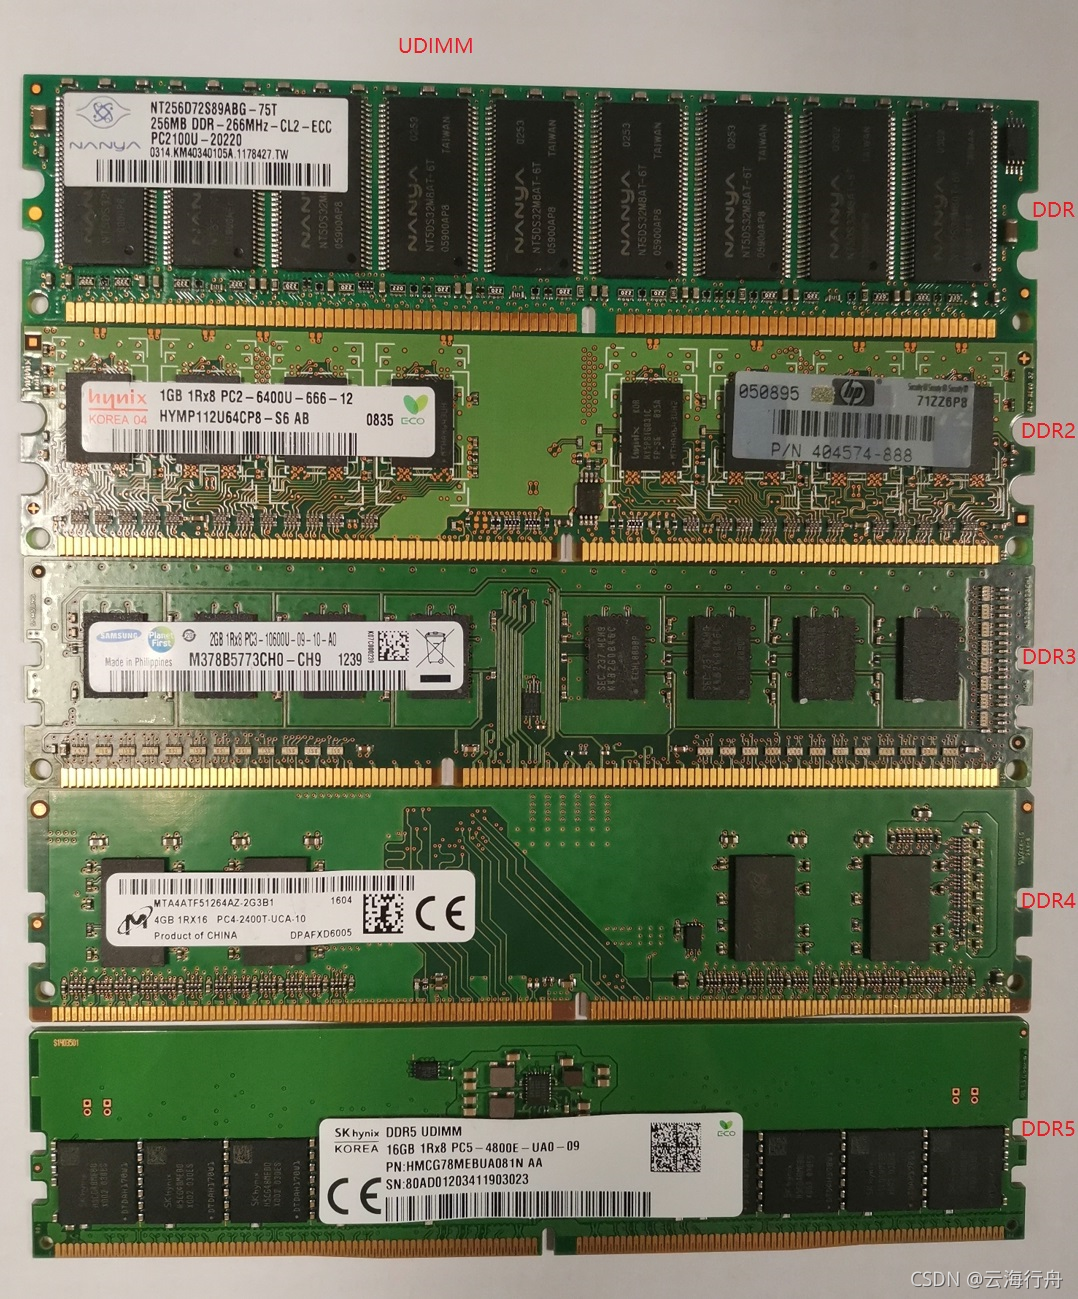 DDR3与DDR4内存性能、能耗和价格的比较分析  第3张